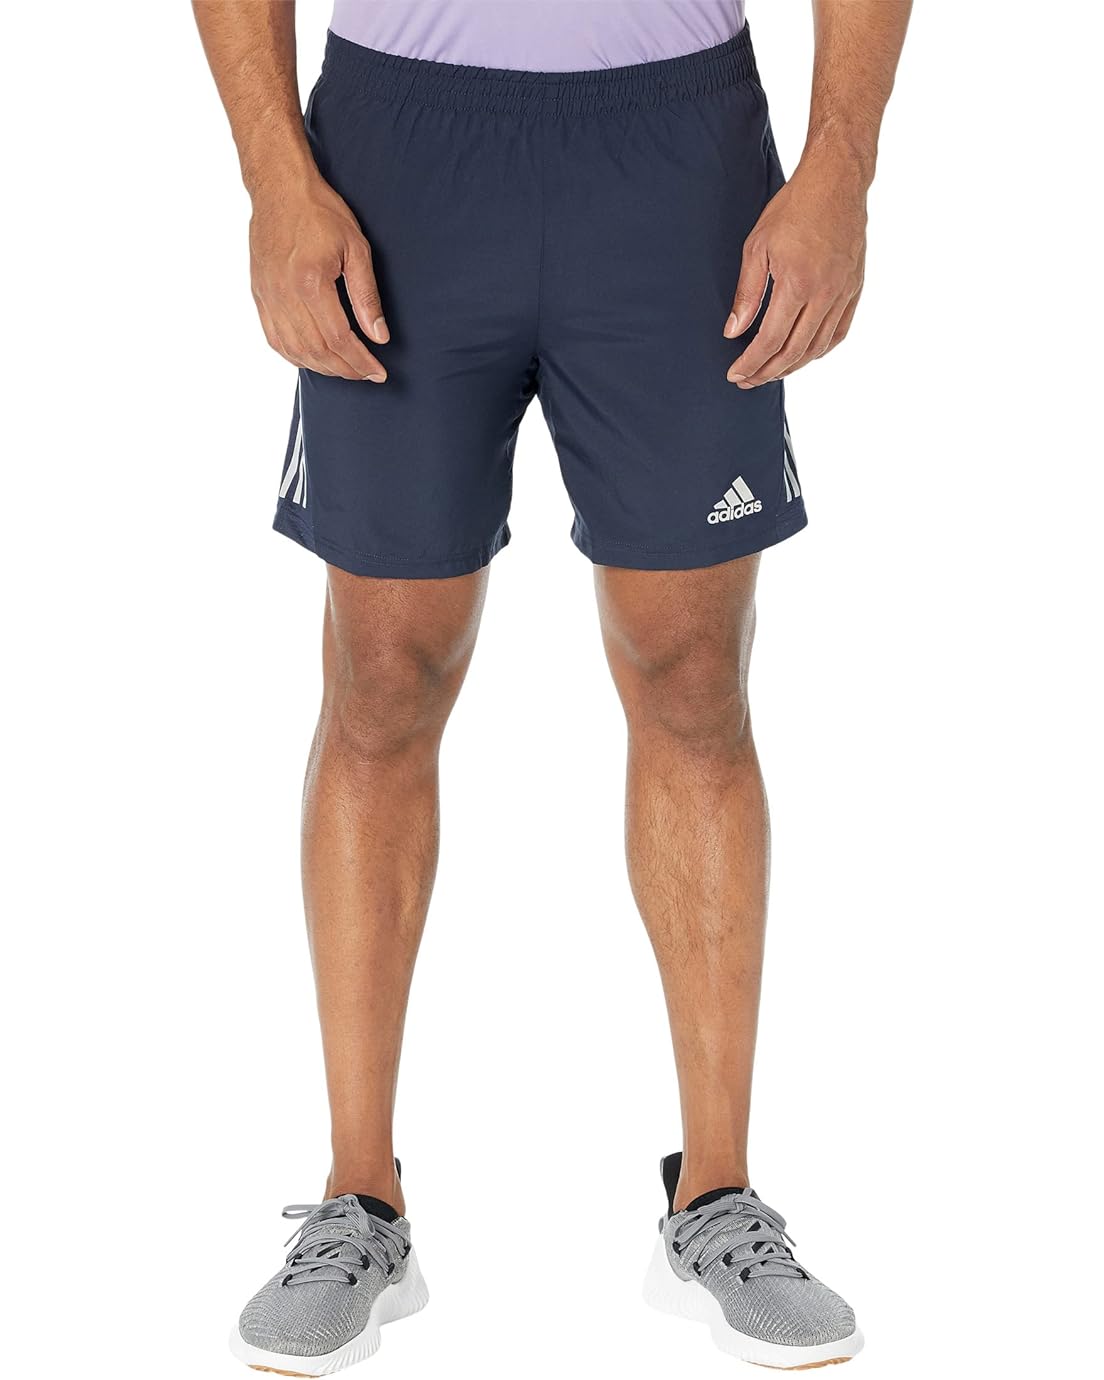 Adidas Own the Run 7 Shorts